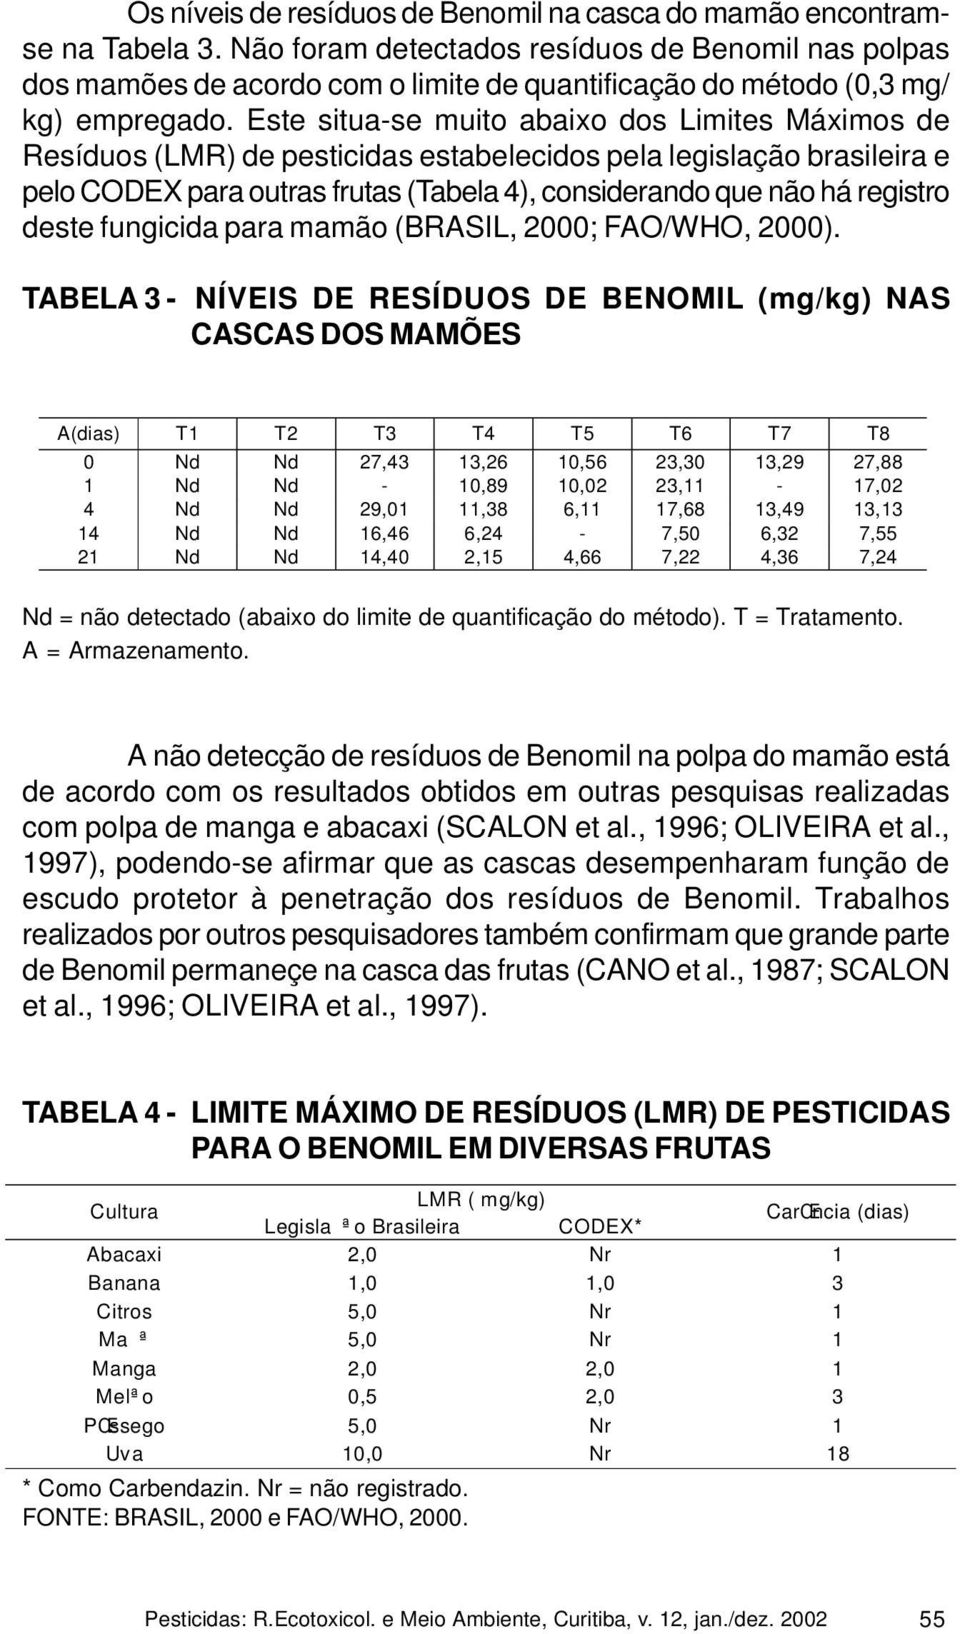 Este situa-se muito abaixo dos Limites Máximos de Resíduos (LMR) de pesticidas estabelecidos pela legislação brasileira e pelo CODEX para outras frutas (Tabela 4), considerando que não há registro